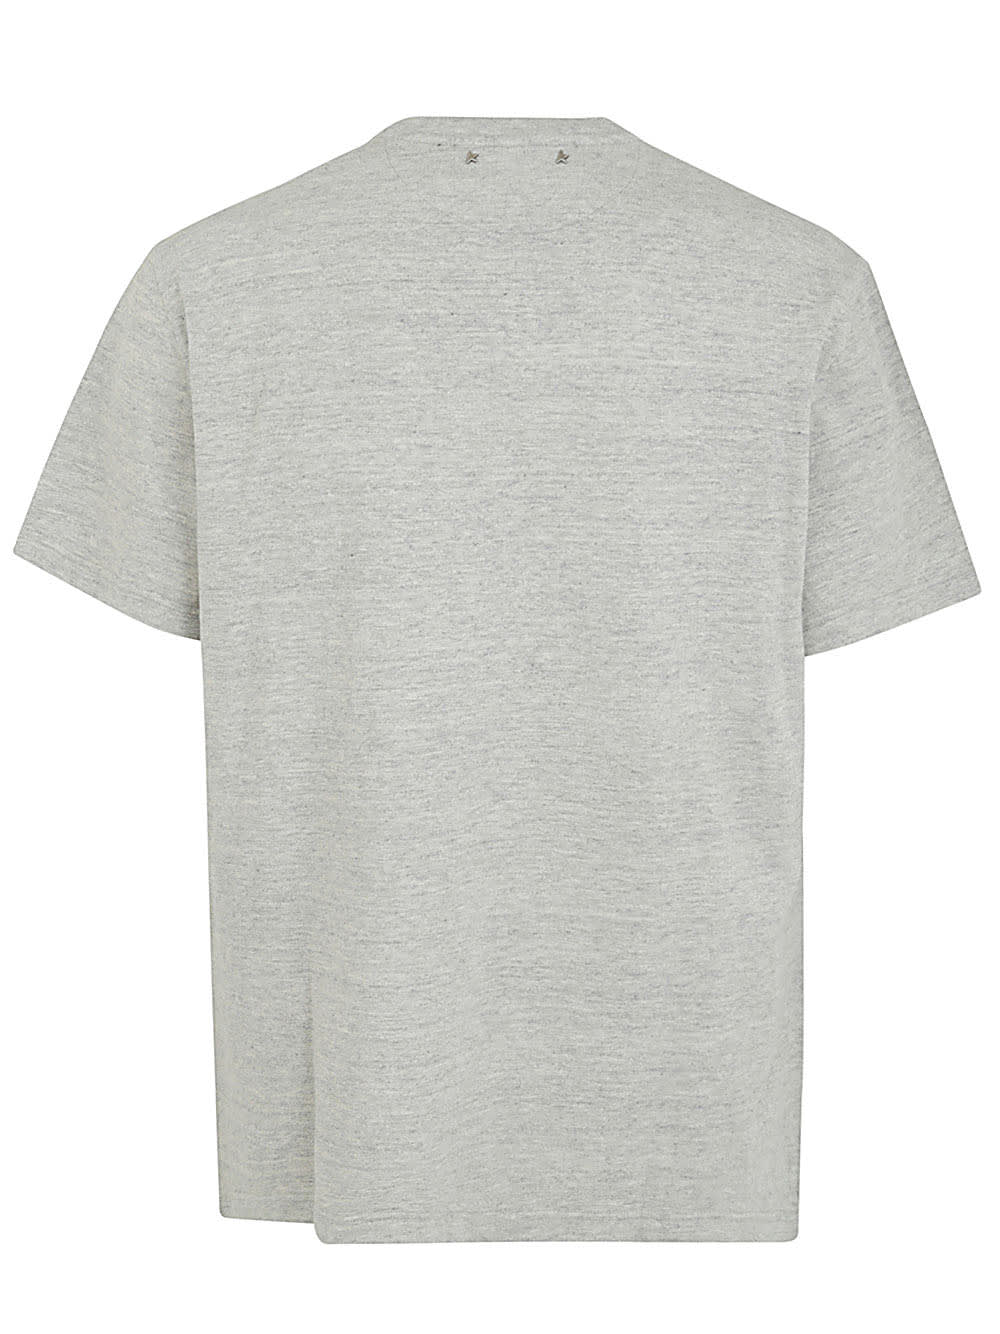 Shop Golden Goose Journey M`s Regular Short Sleeves T-shirt With Pocket In Melange Grey Black